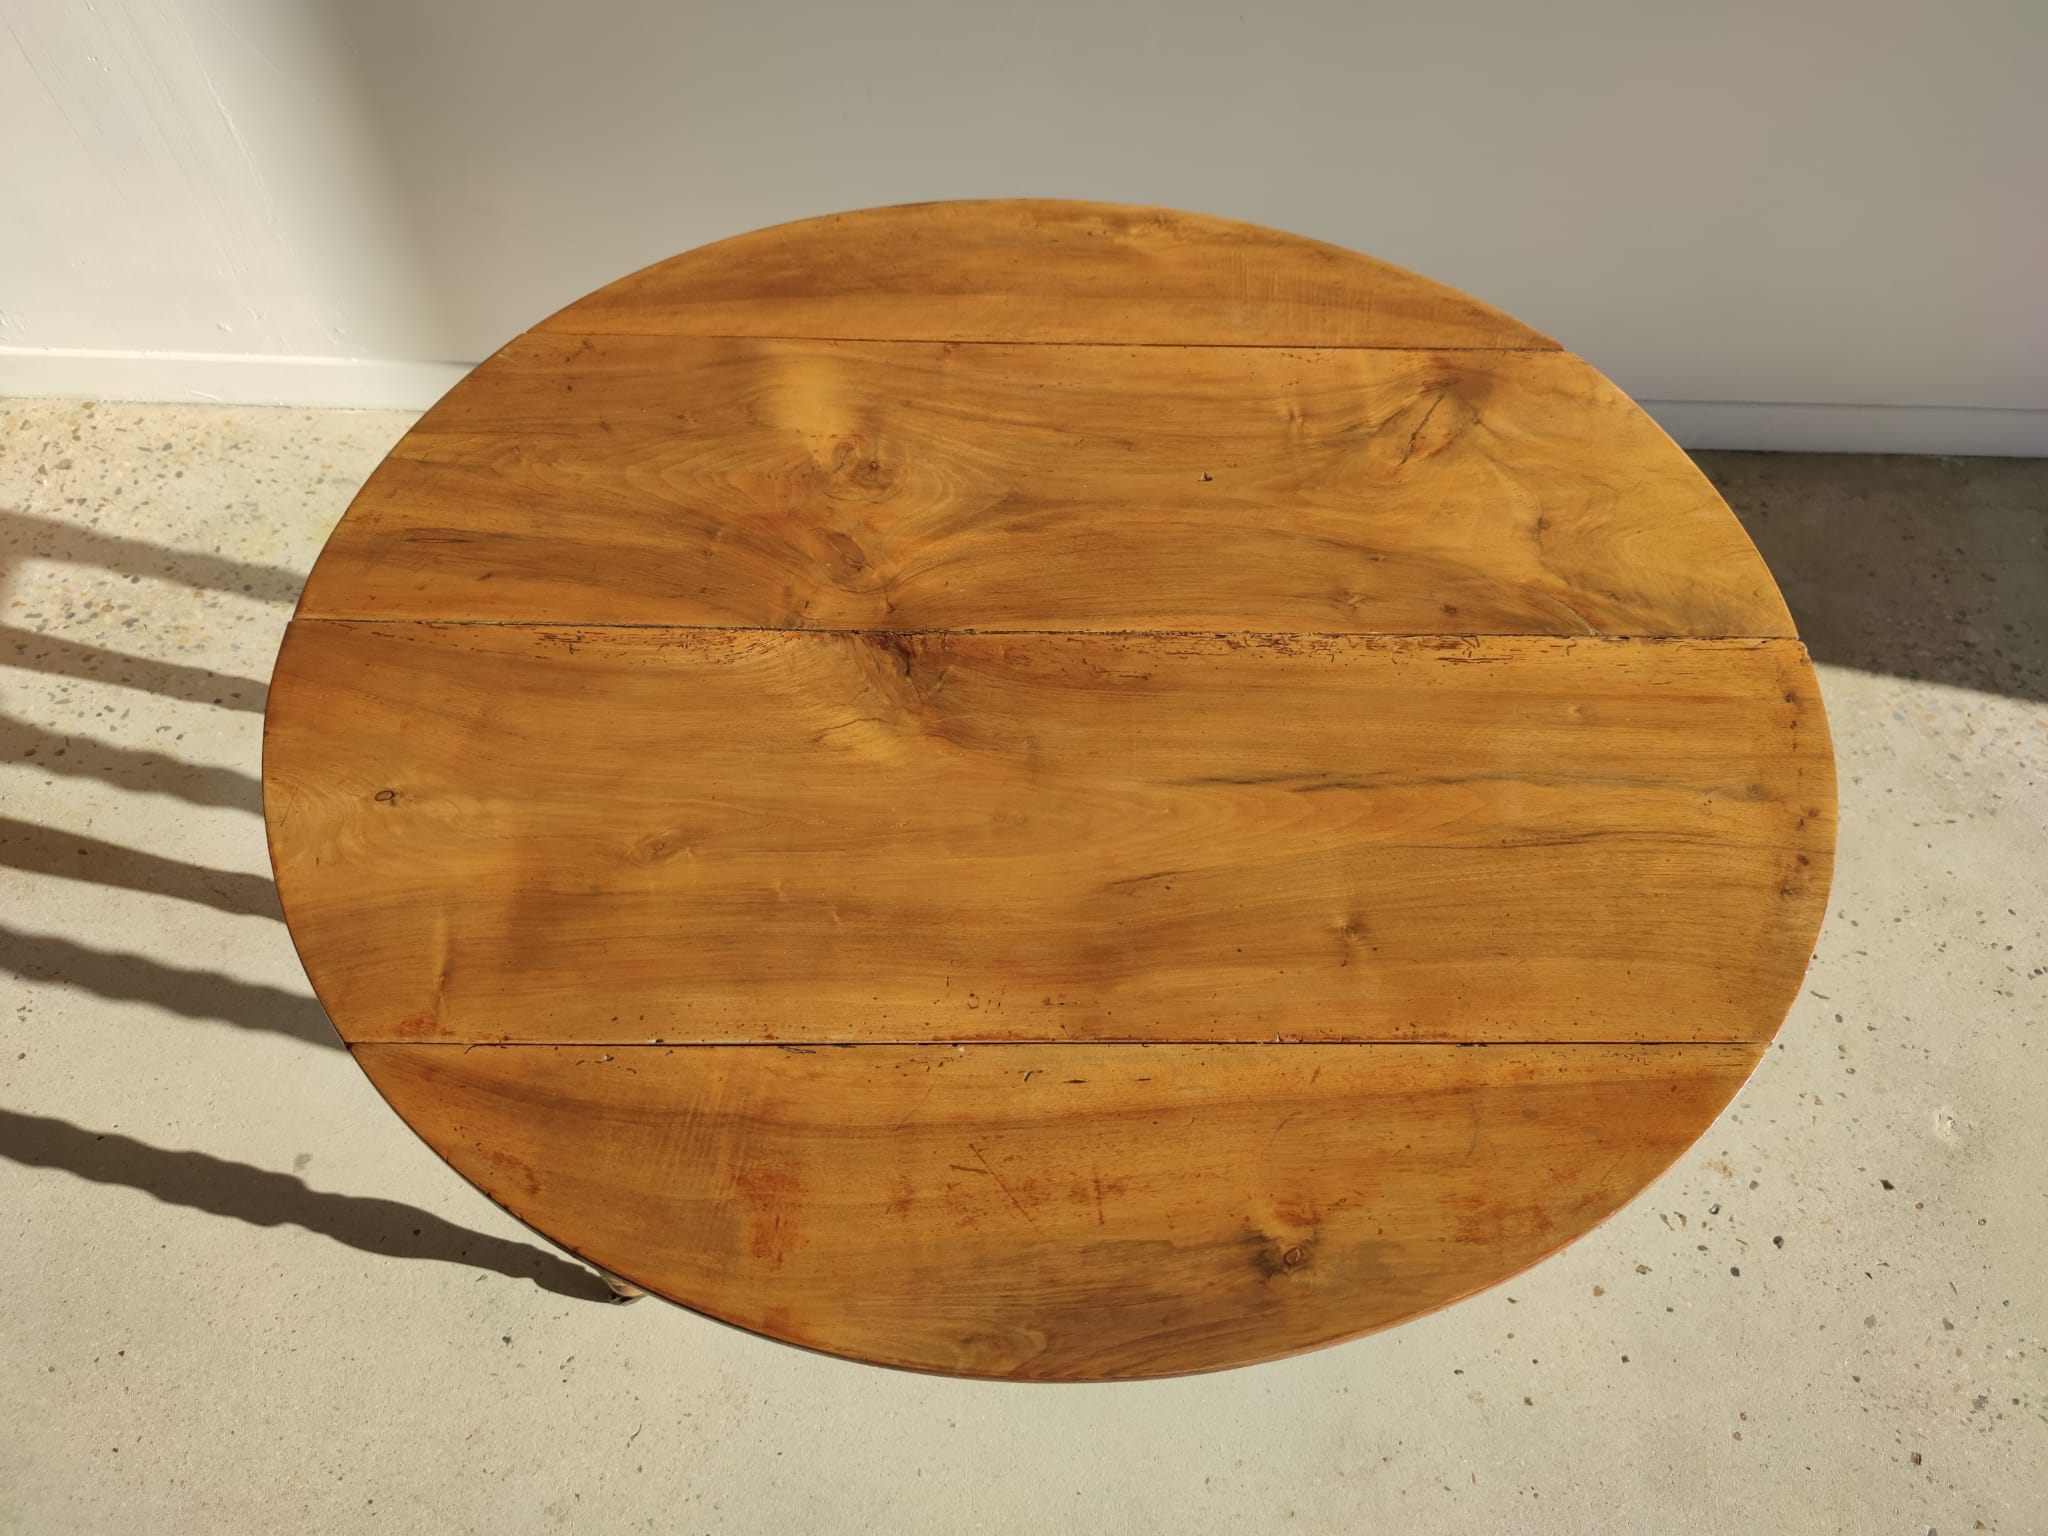 Table de salle à manger circulaire en bois naturel, 6 pieds tournés à roulettes